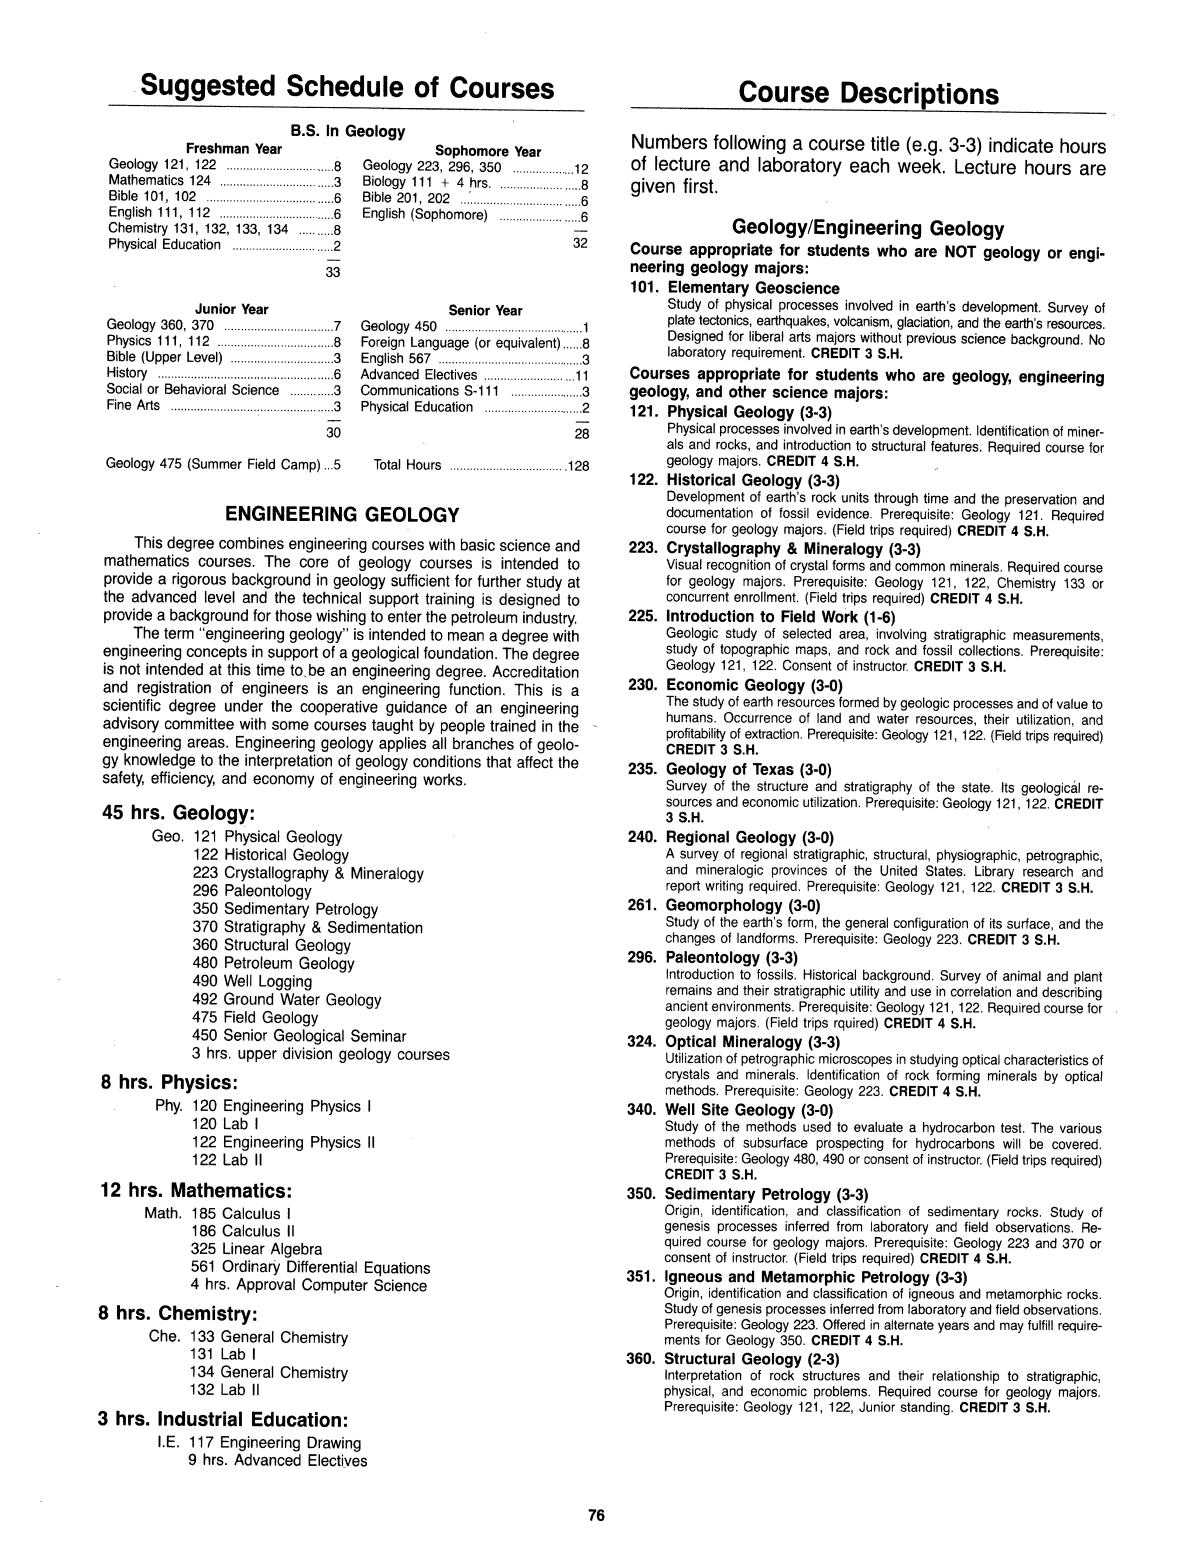 Catalog of Abilene Christian University, 1985-1986
                                                
                                                    76
                                                